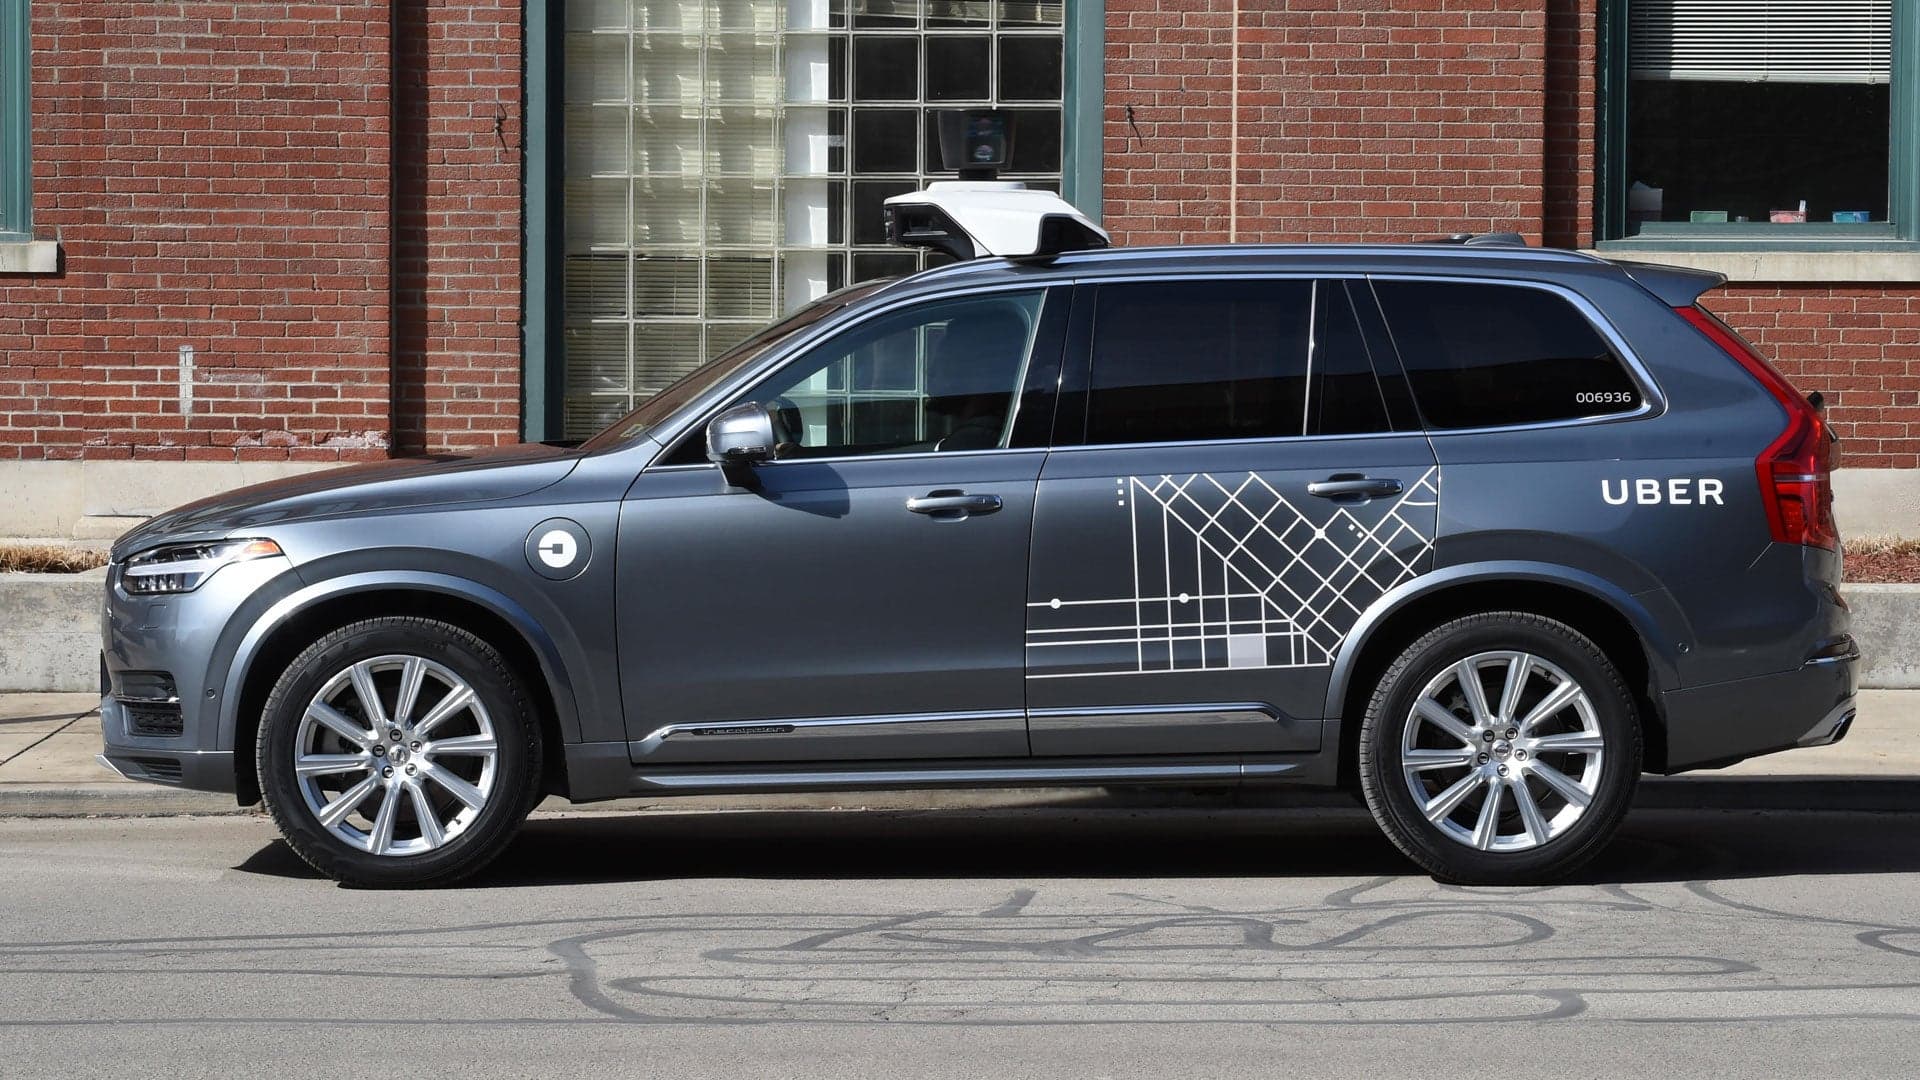 Uber Gets Permission to Restart Self-Driving Car Tests Months After Fatal Crash